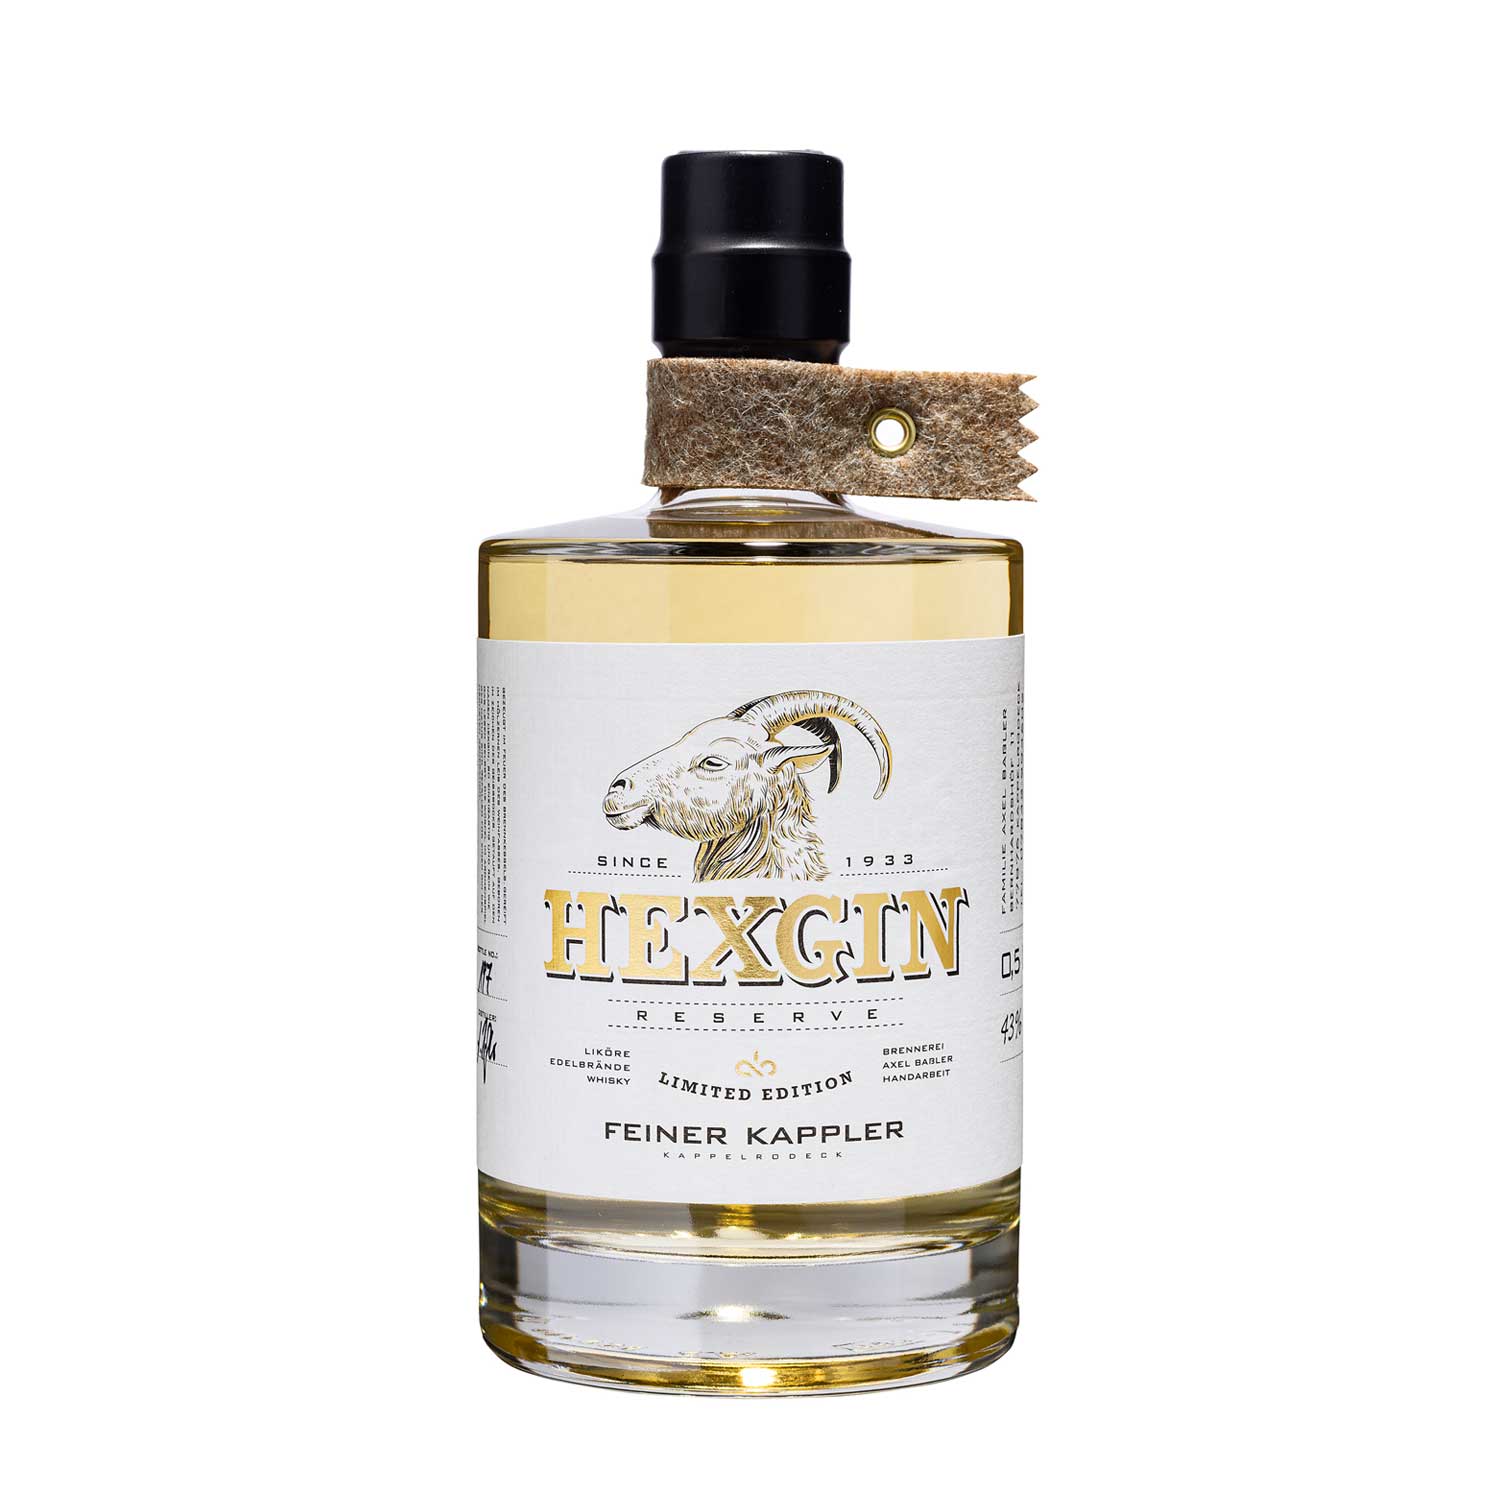 Feiner Kappler Single Cask Dry Gin - HEXGIN No. 2